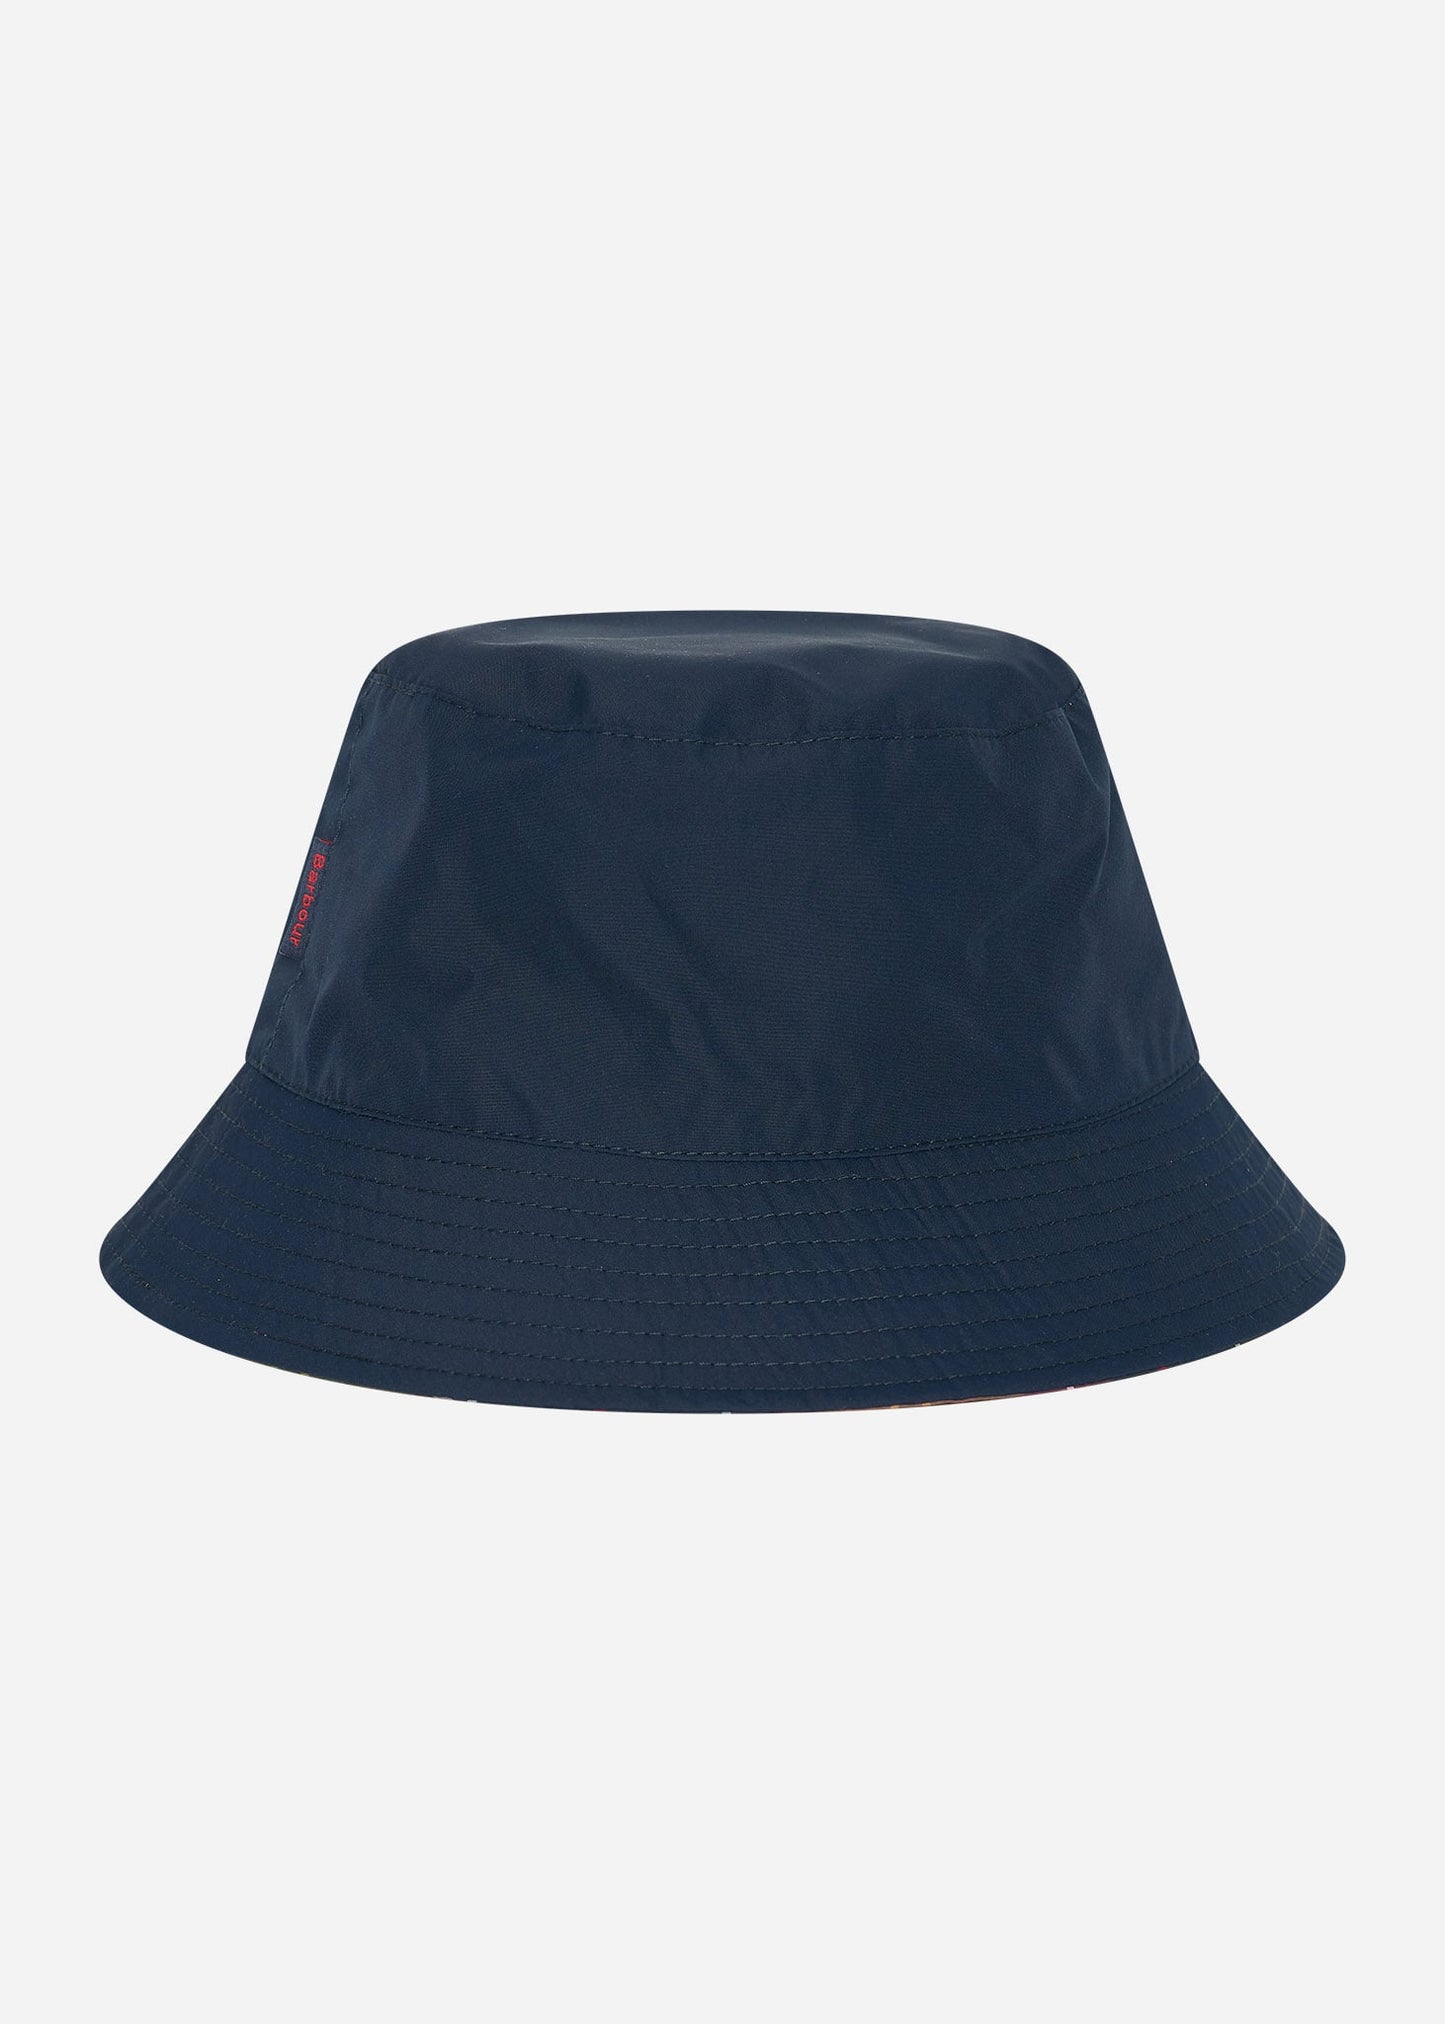 Barbour Bucket Hats  Hutton reversible bucket hat - navy classic 